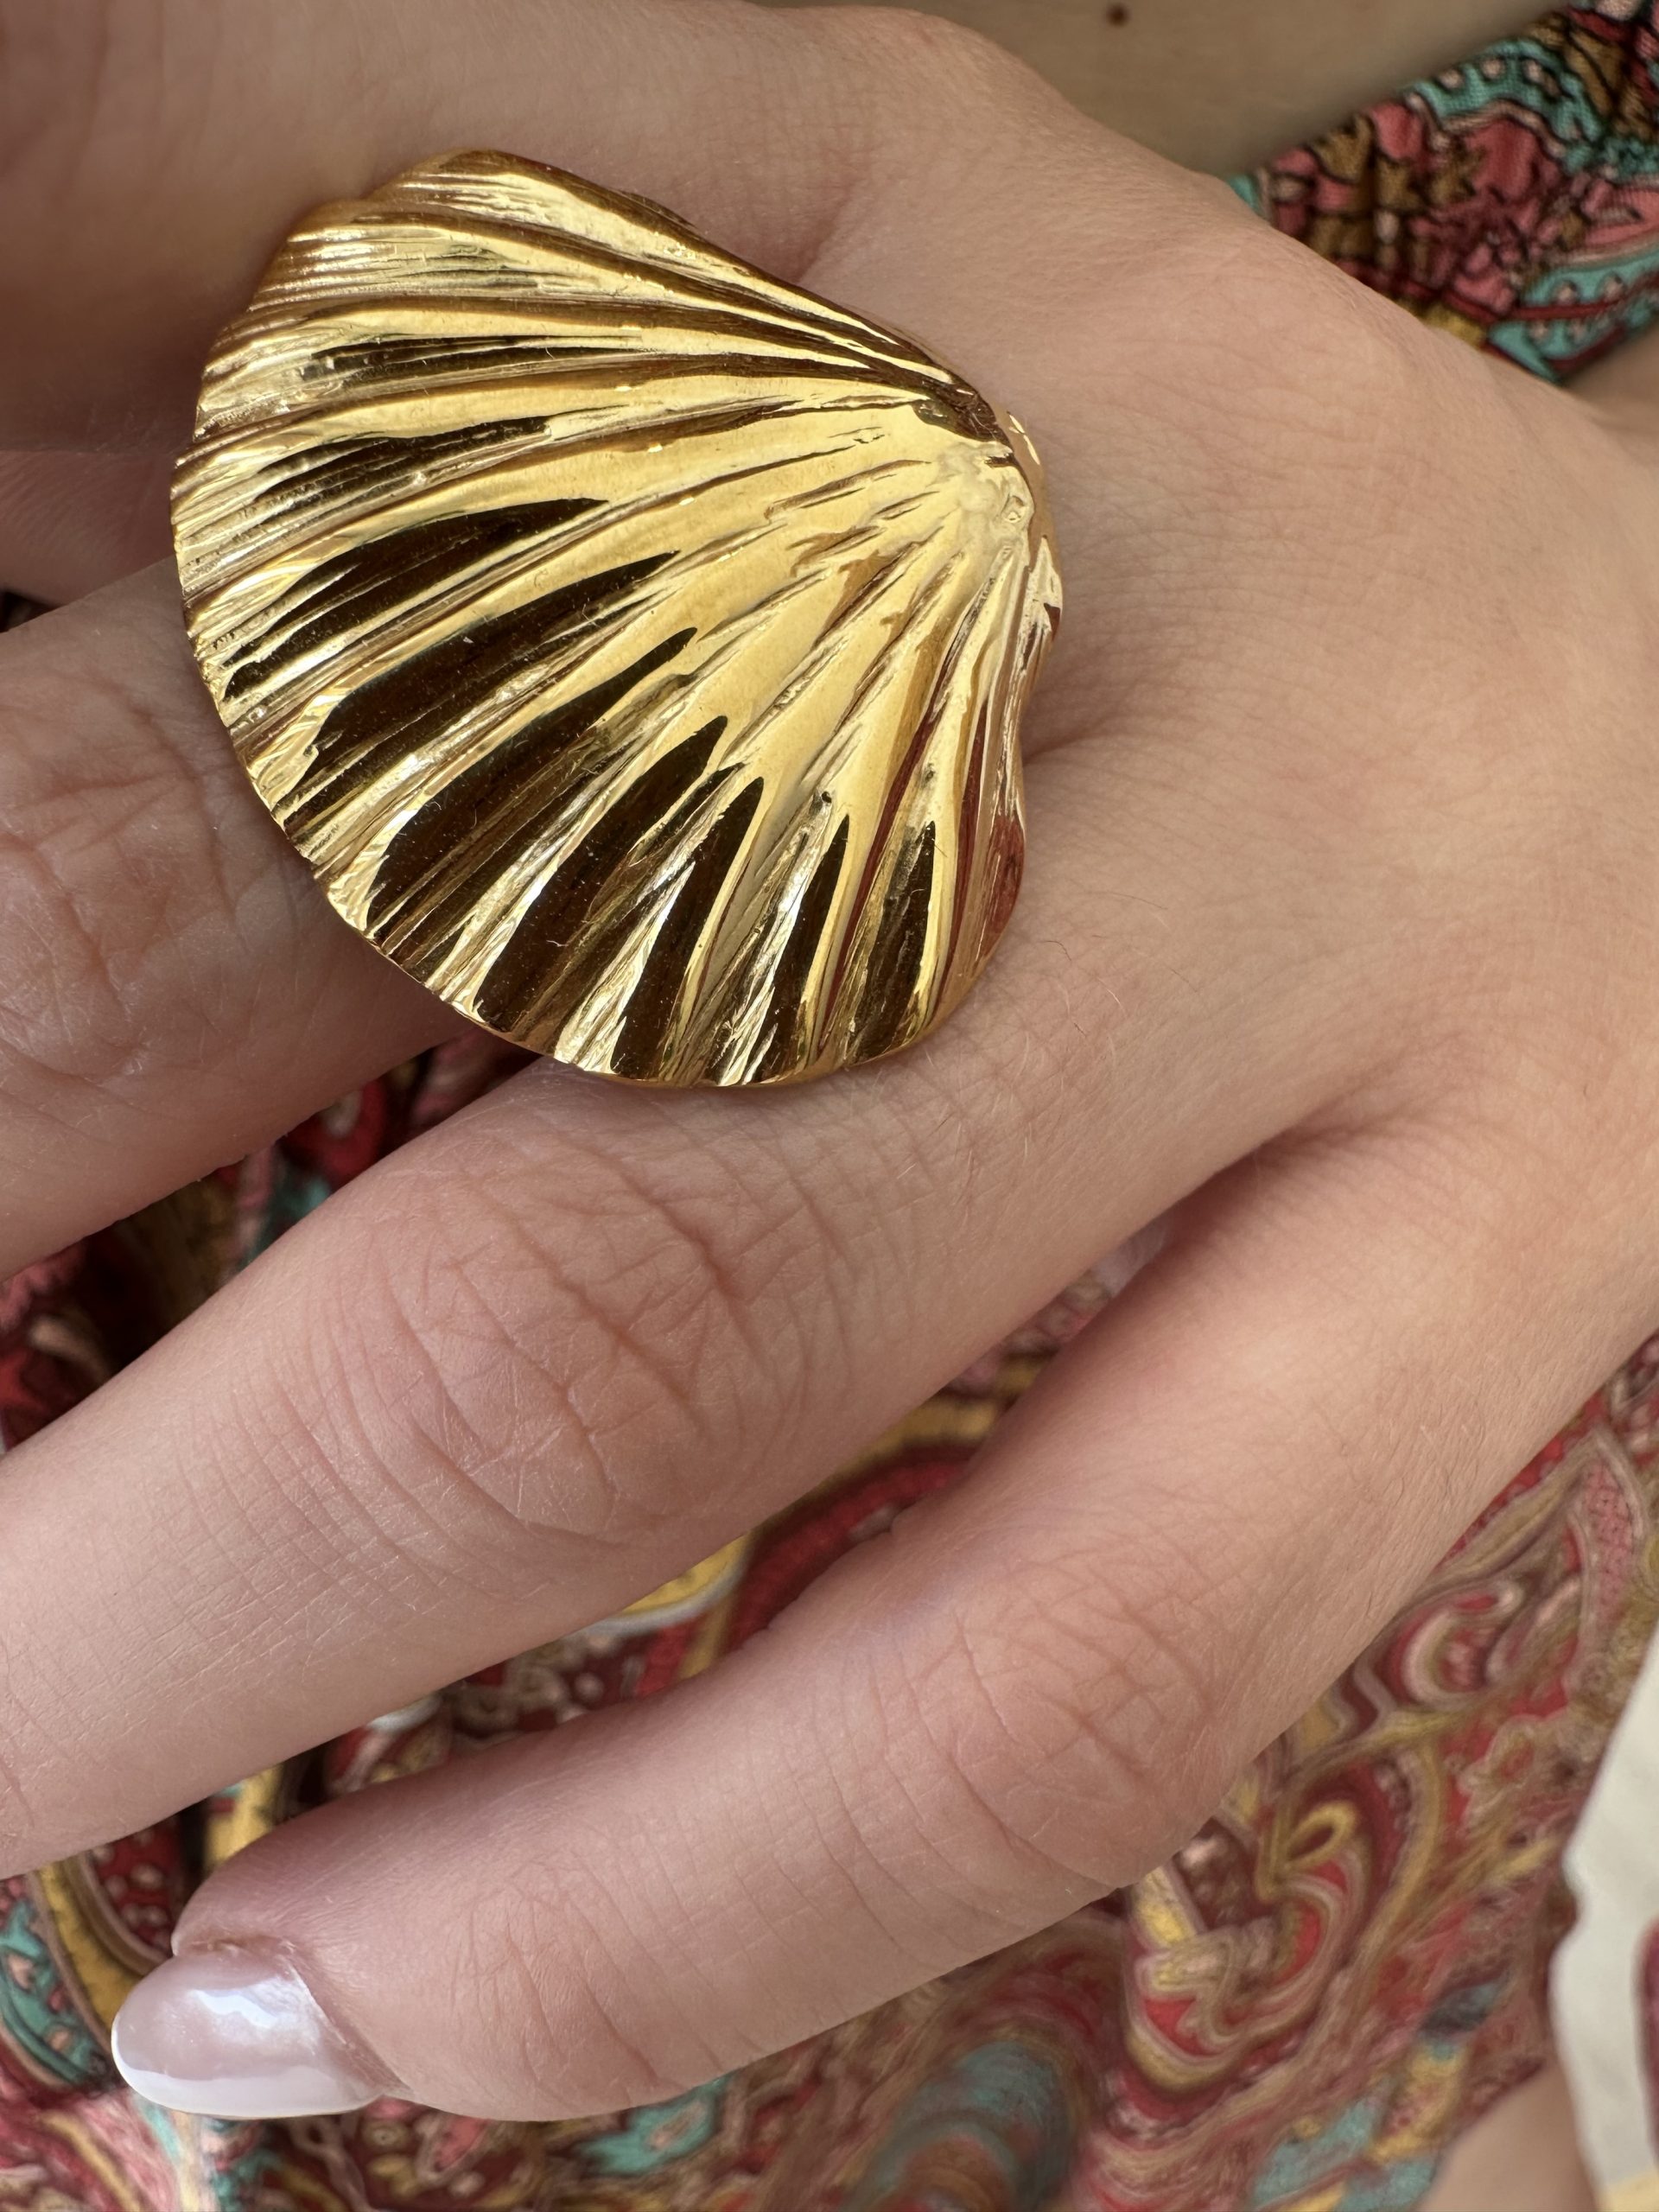 Ατσάλινο δαχτυλίδι σε χρυσό χρώμα σε σχήμα αχιβάδας .Ιδανικό δαχτυλίδι που κοσμεί μοναδικά τα χέρια σου τους καλοκαιρινούς μήνες . Βρες το στο www.cprcollection.gr